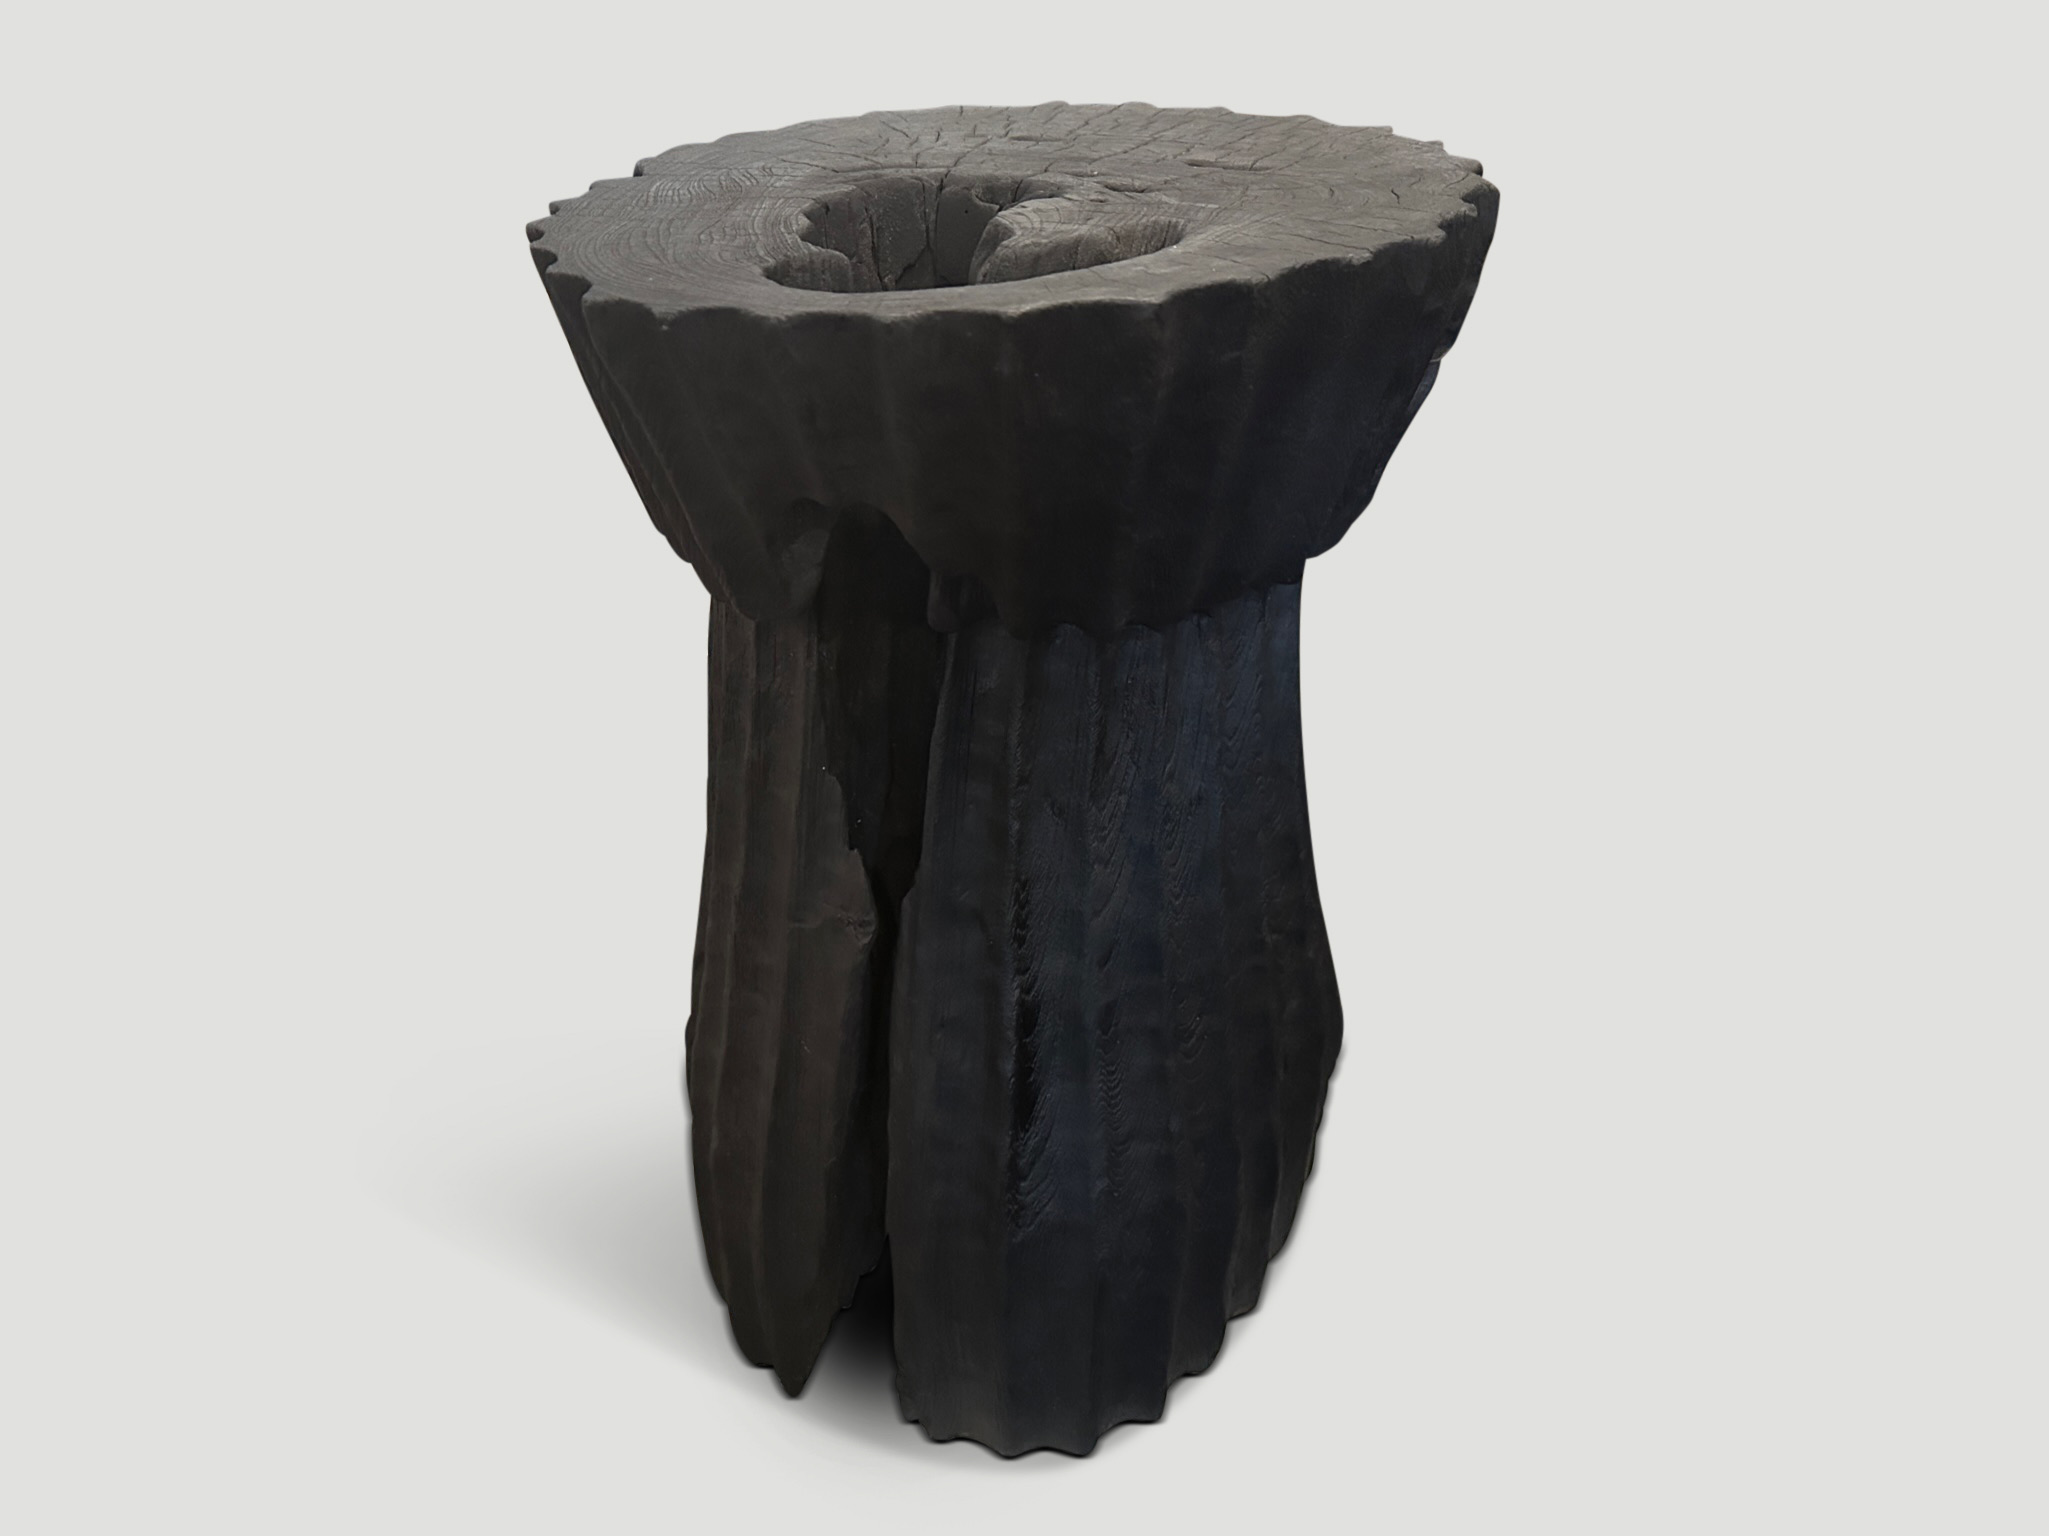 minimalist charred teak wood side table or pedestal